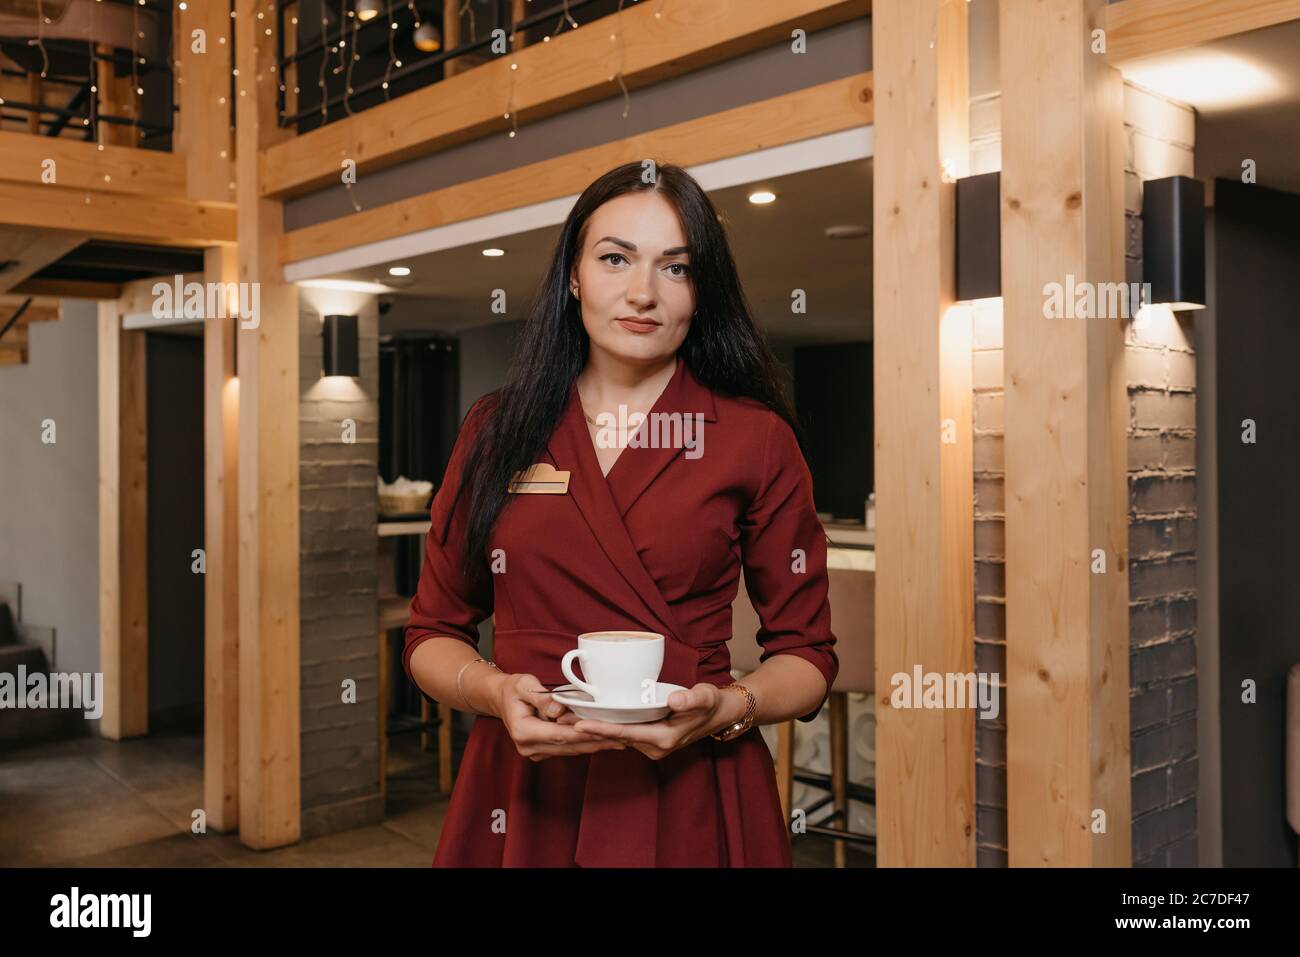 Una manager di un ristorante femminile sta tenendo una tazza di caffè in un ristorante. Un gentile proprietario di un caffè in un abito rubino sta aspettando un cliente. Foto Stock